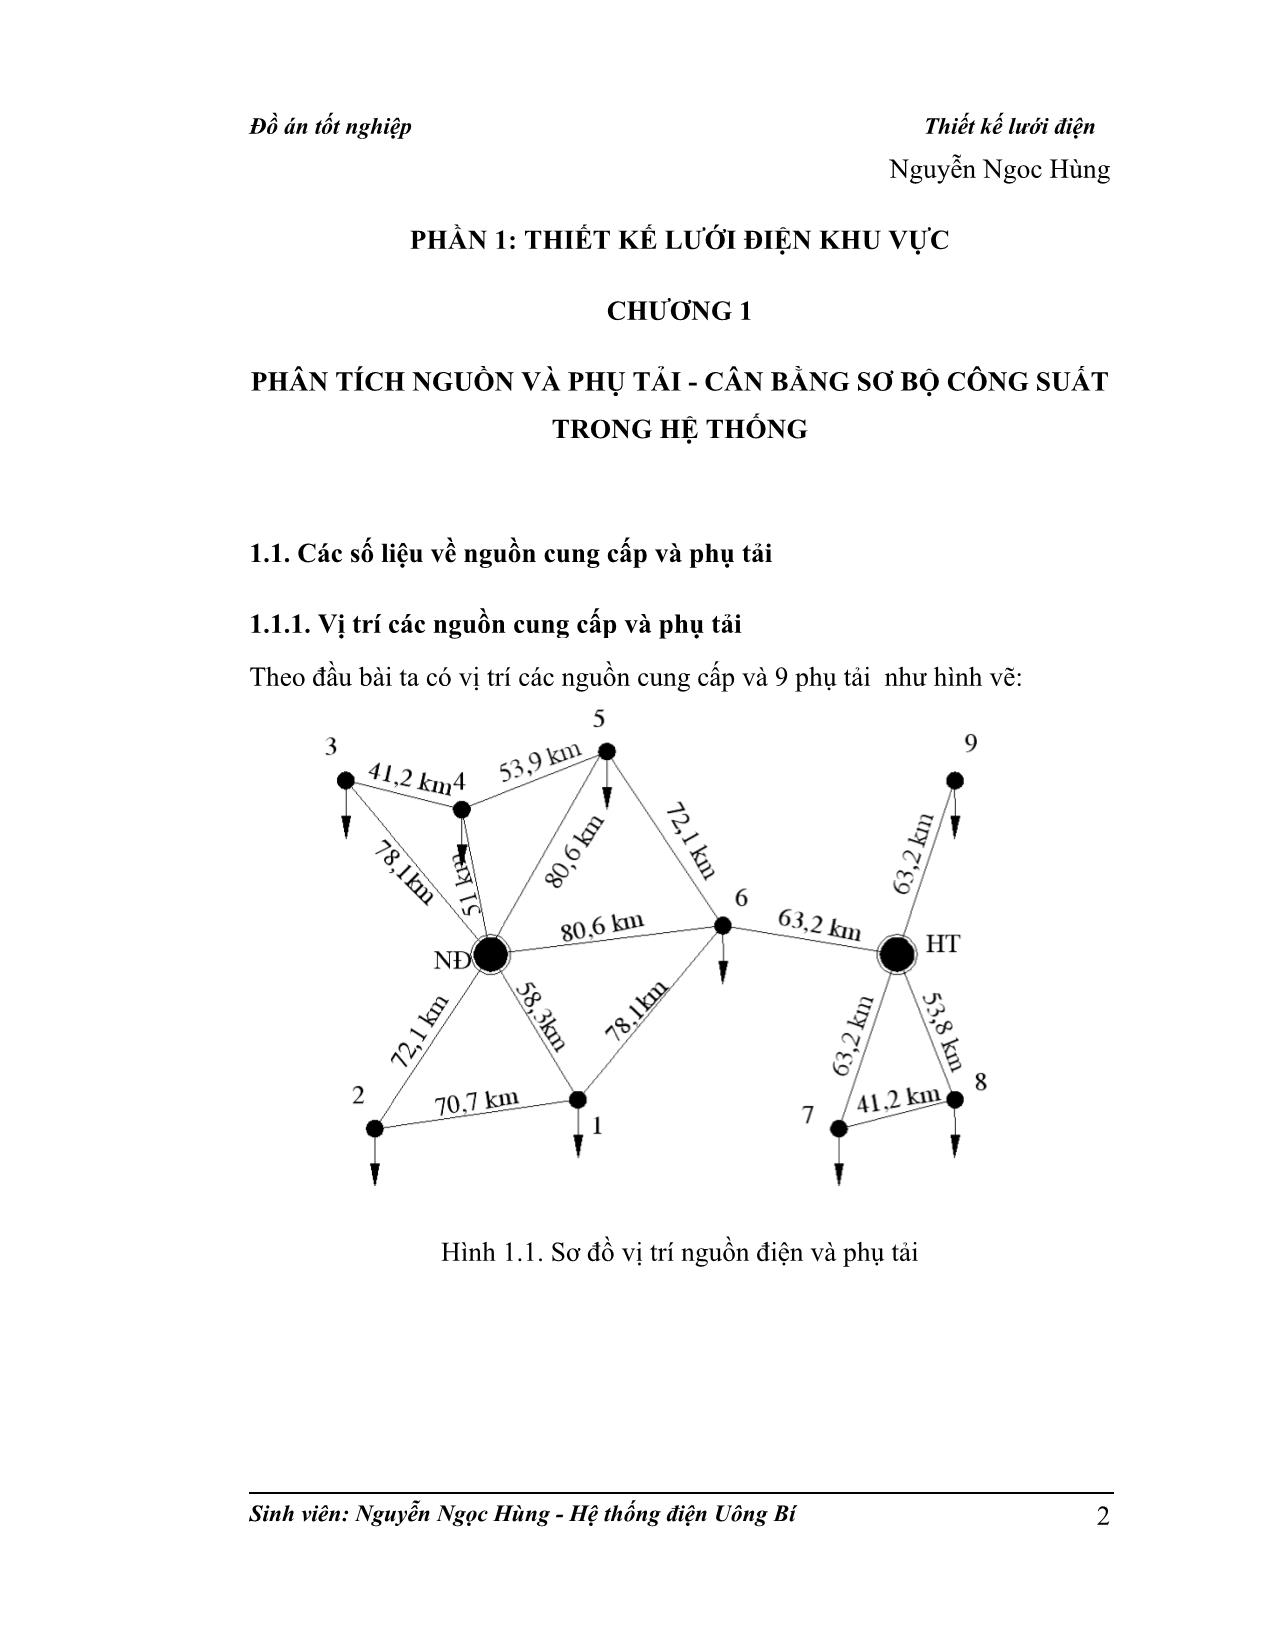 Đồ án Thiết kế về lưới điện trang 3